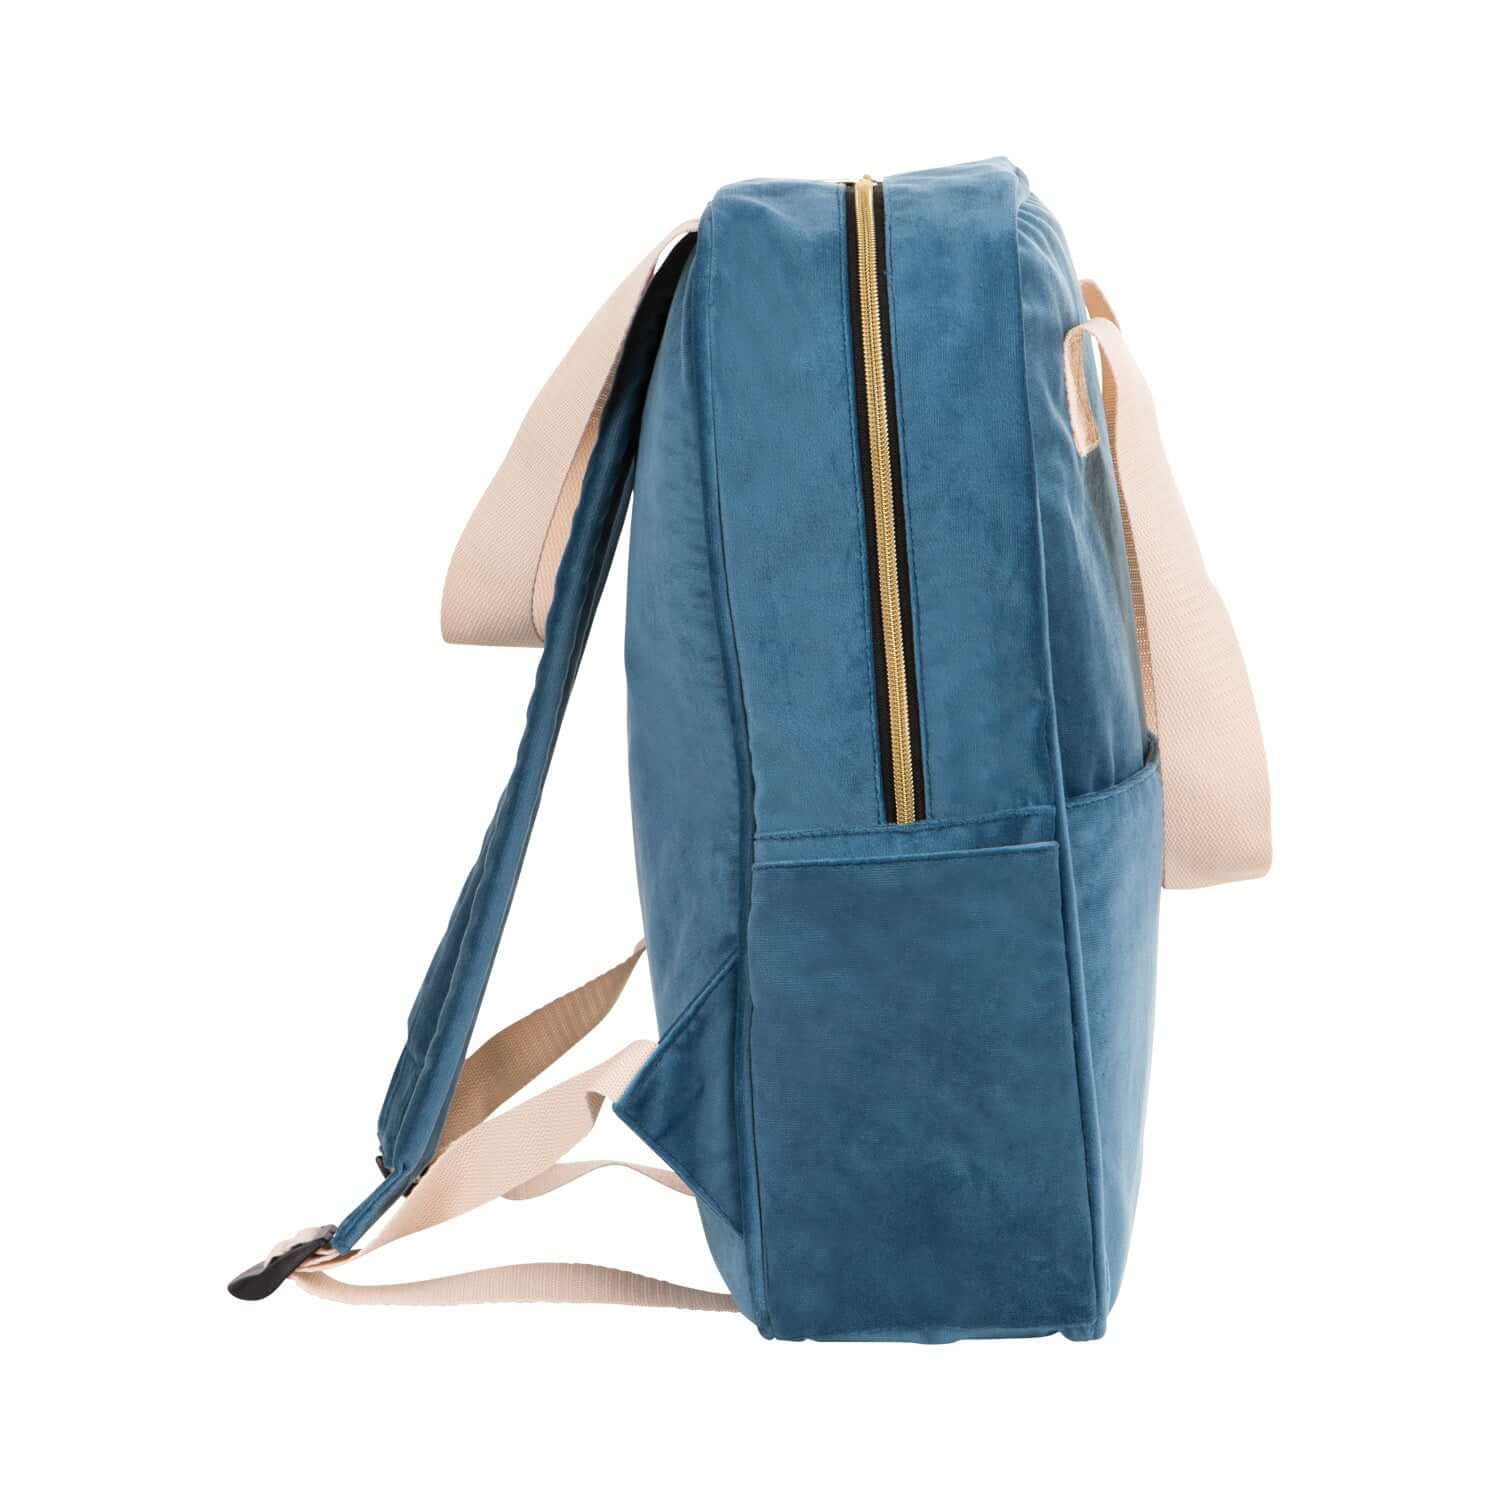 best backpack for college. velvet backpack by bettys home. school backpack for girls. 